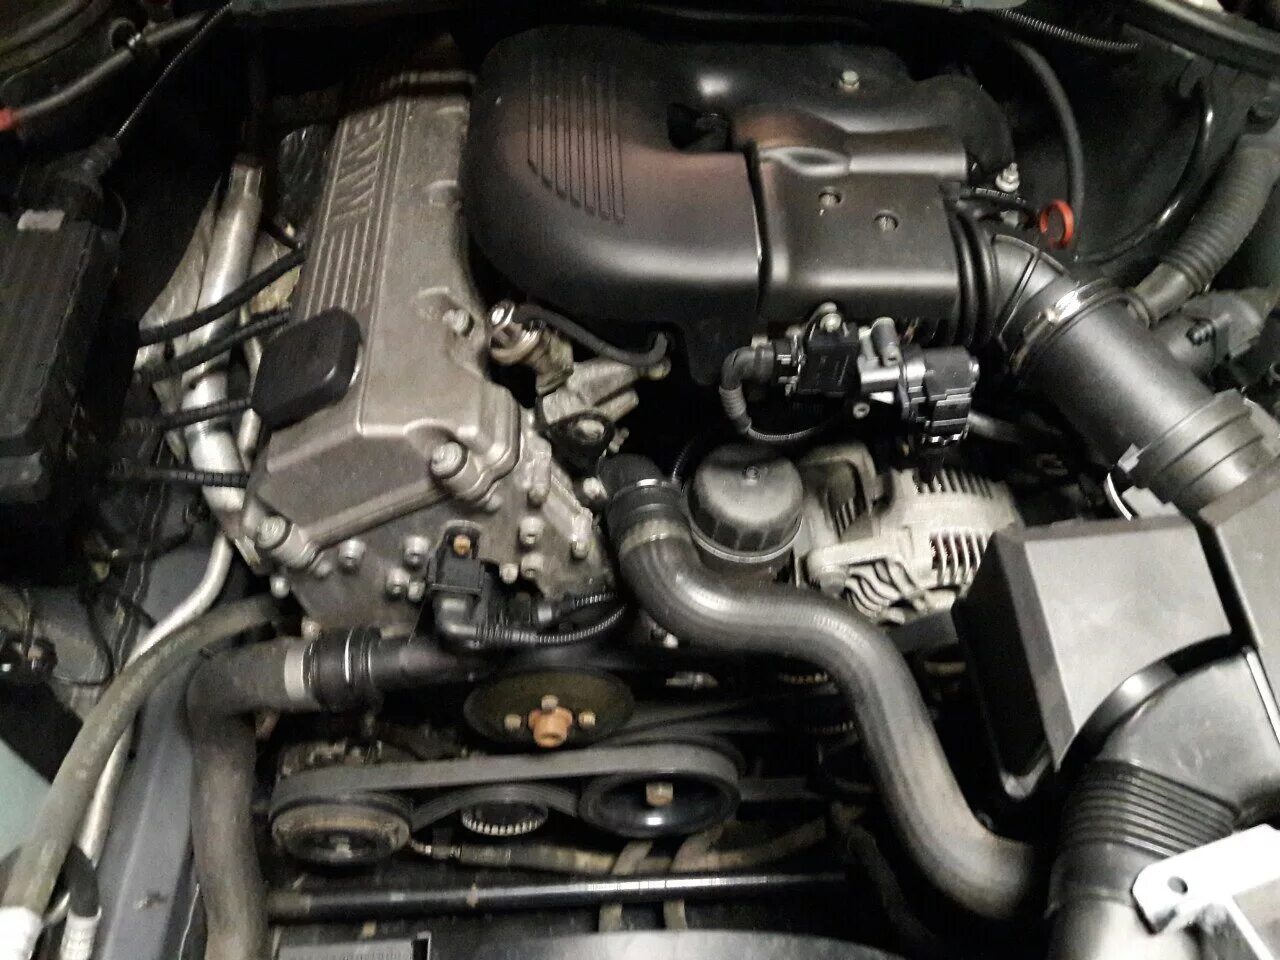 Е46 м47. М43 мотор БМВ. БМВ е46 мотор 1.9. Мотор БМВ м43 1.9. BMW e46 1.9 двигатель.